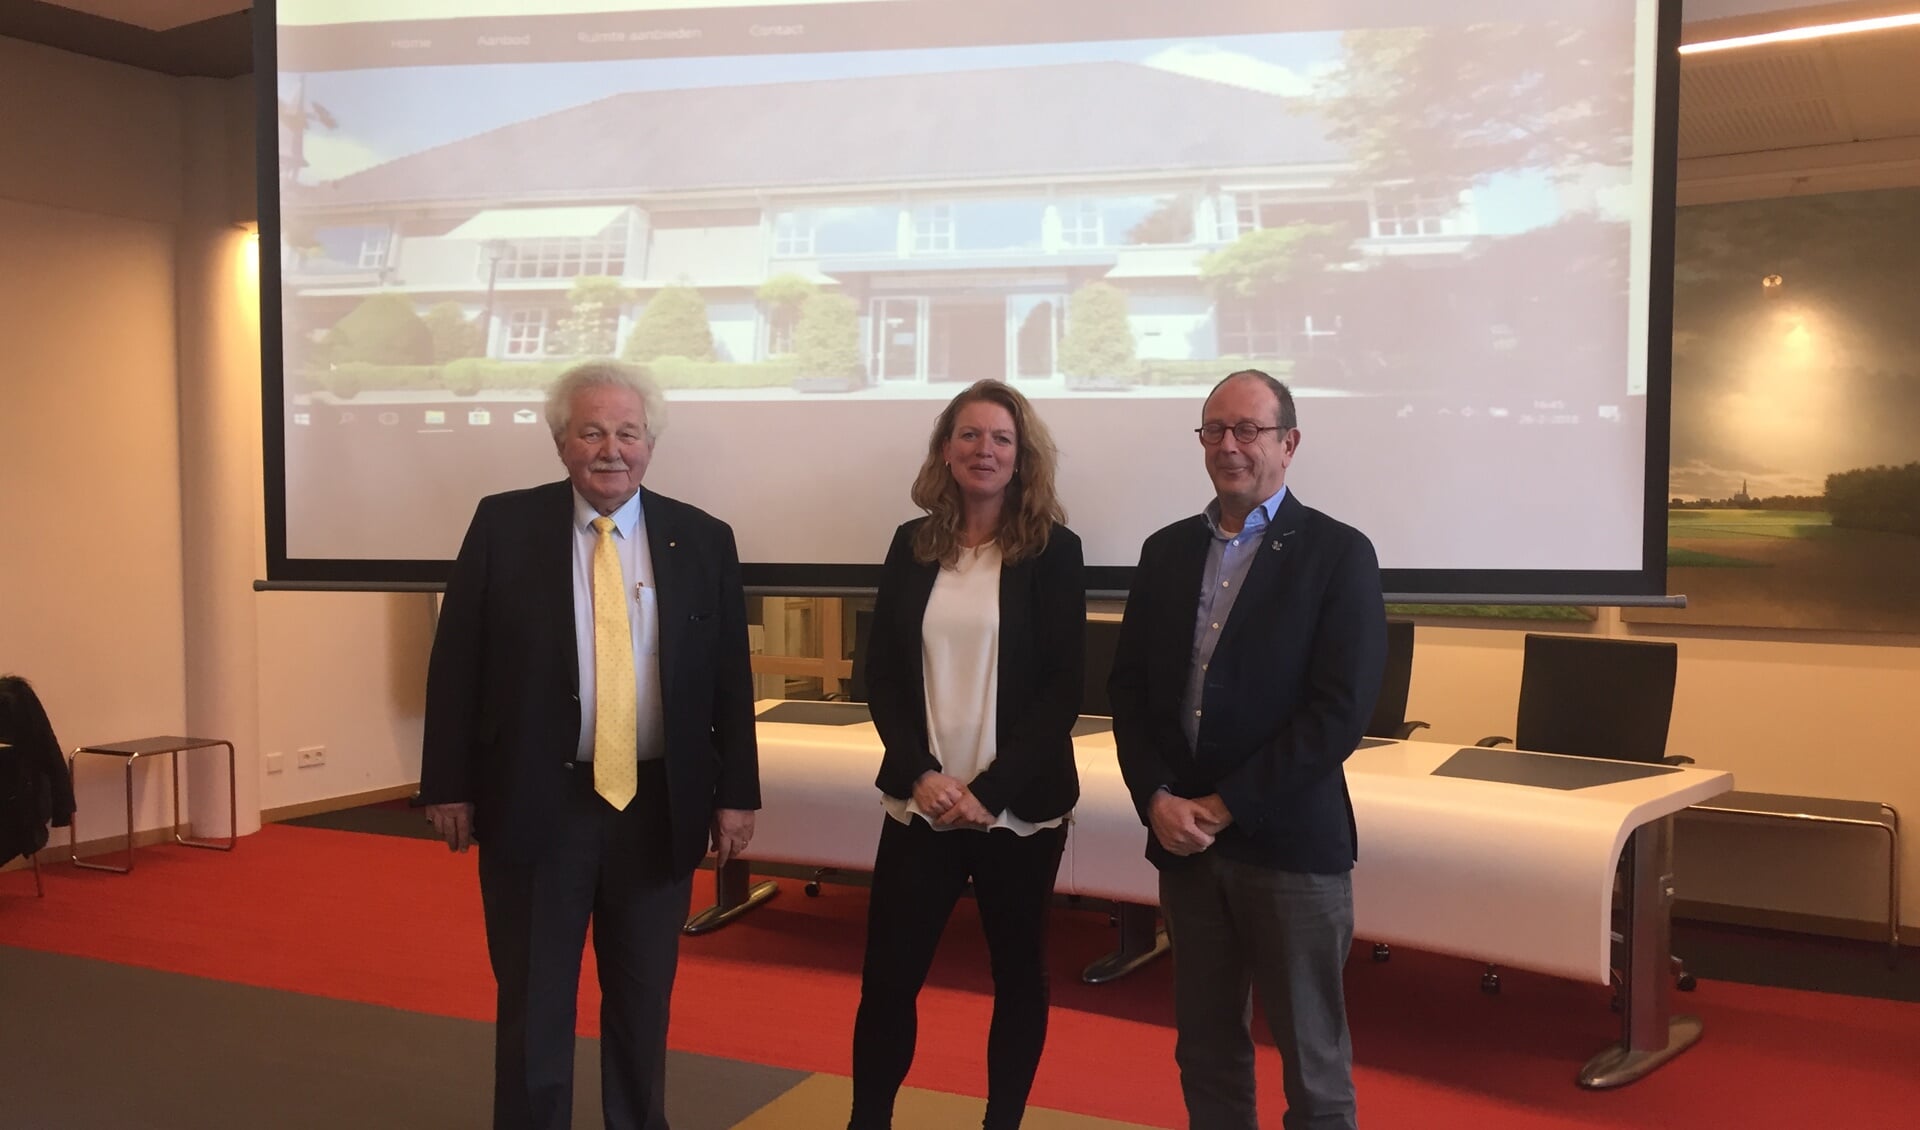 Joost Kuurman, Yvonne Duivenvoorden en Adri de Roon bij de lancering van het Makelpunt.